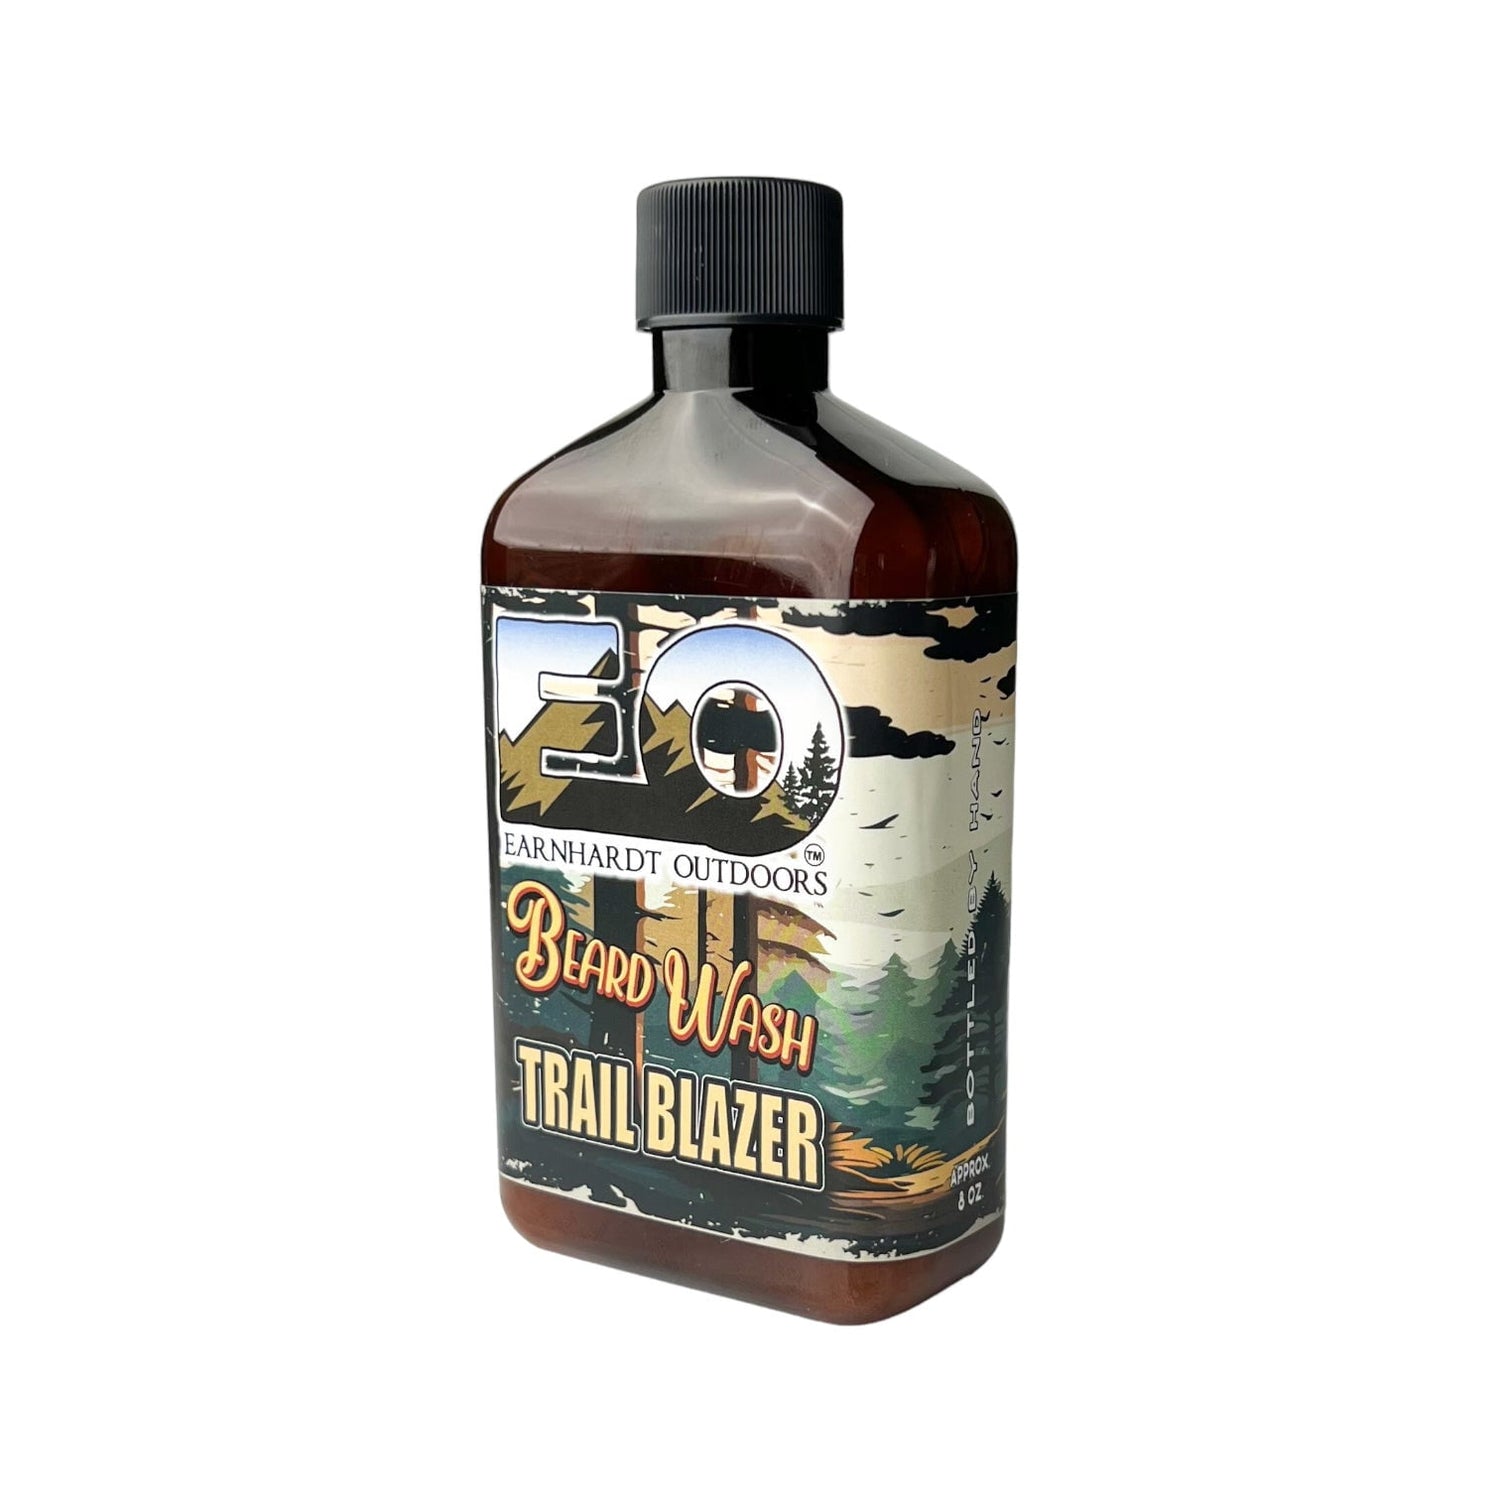 Trail Blazer Earnhardt Outdoors Beard Wash - Old Town Soap Co.